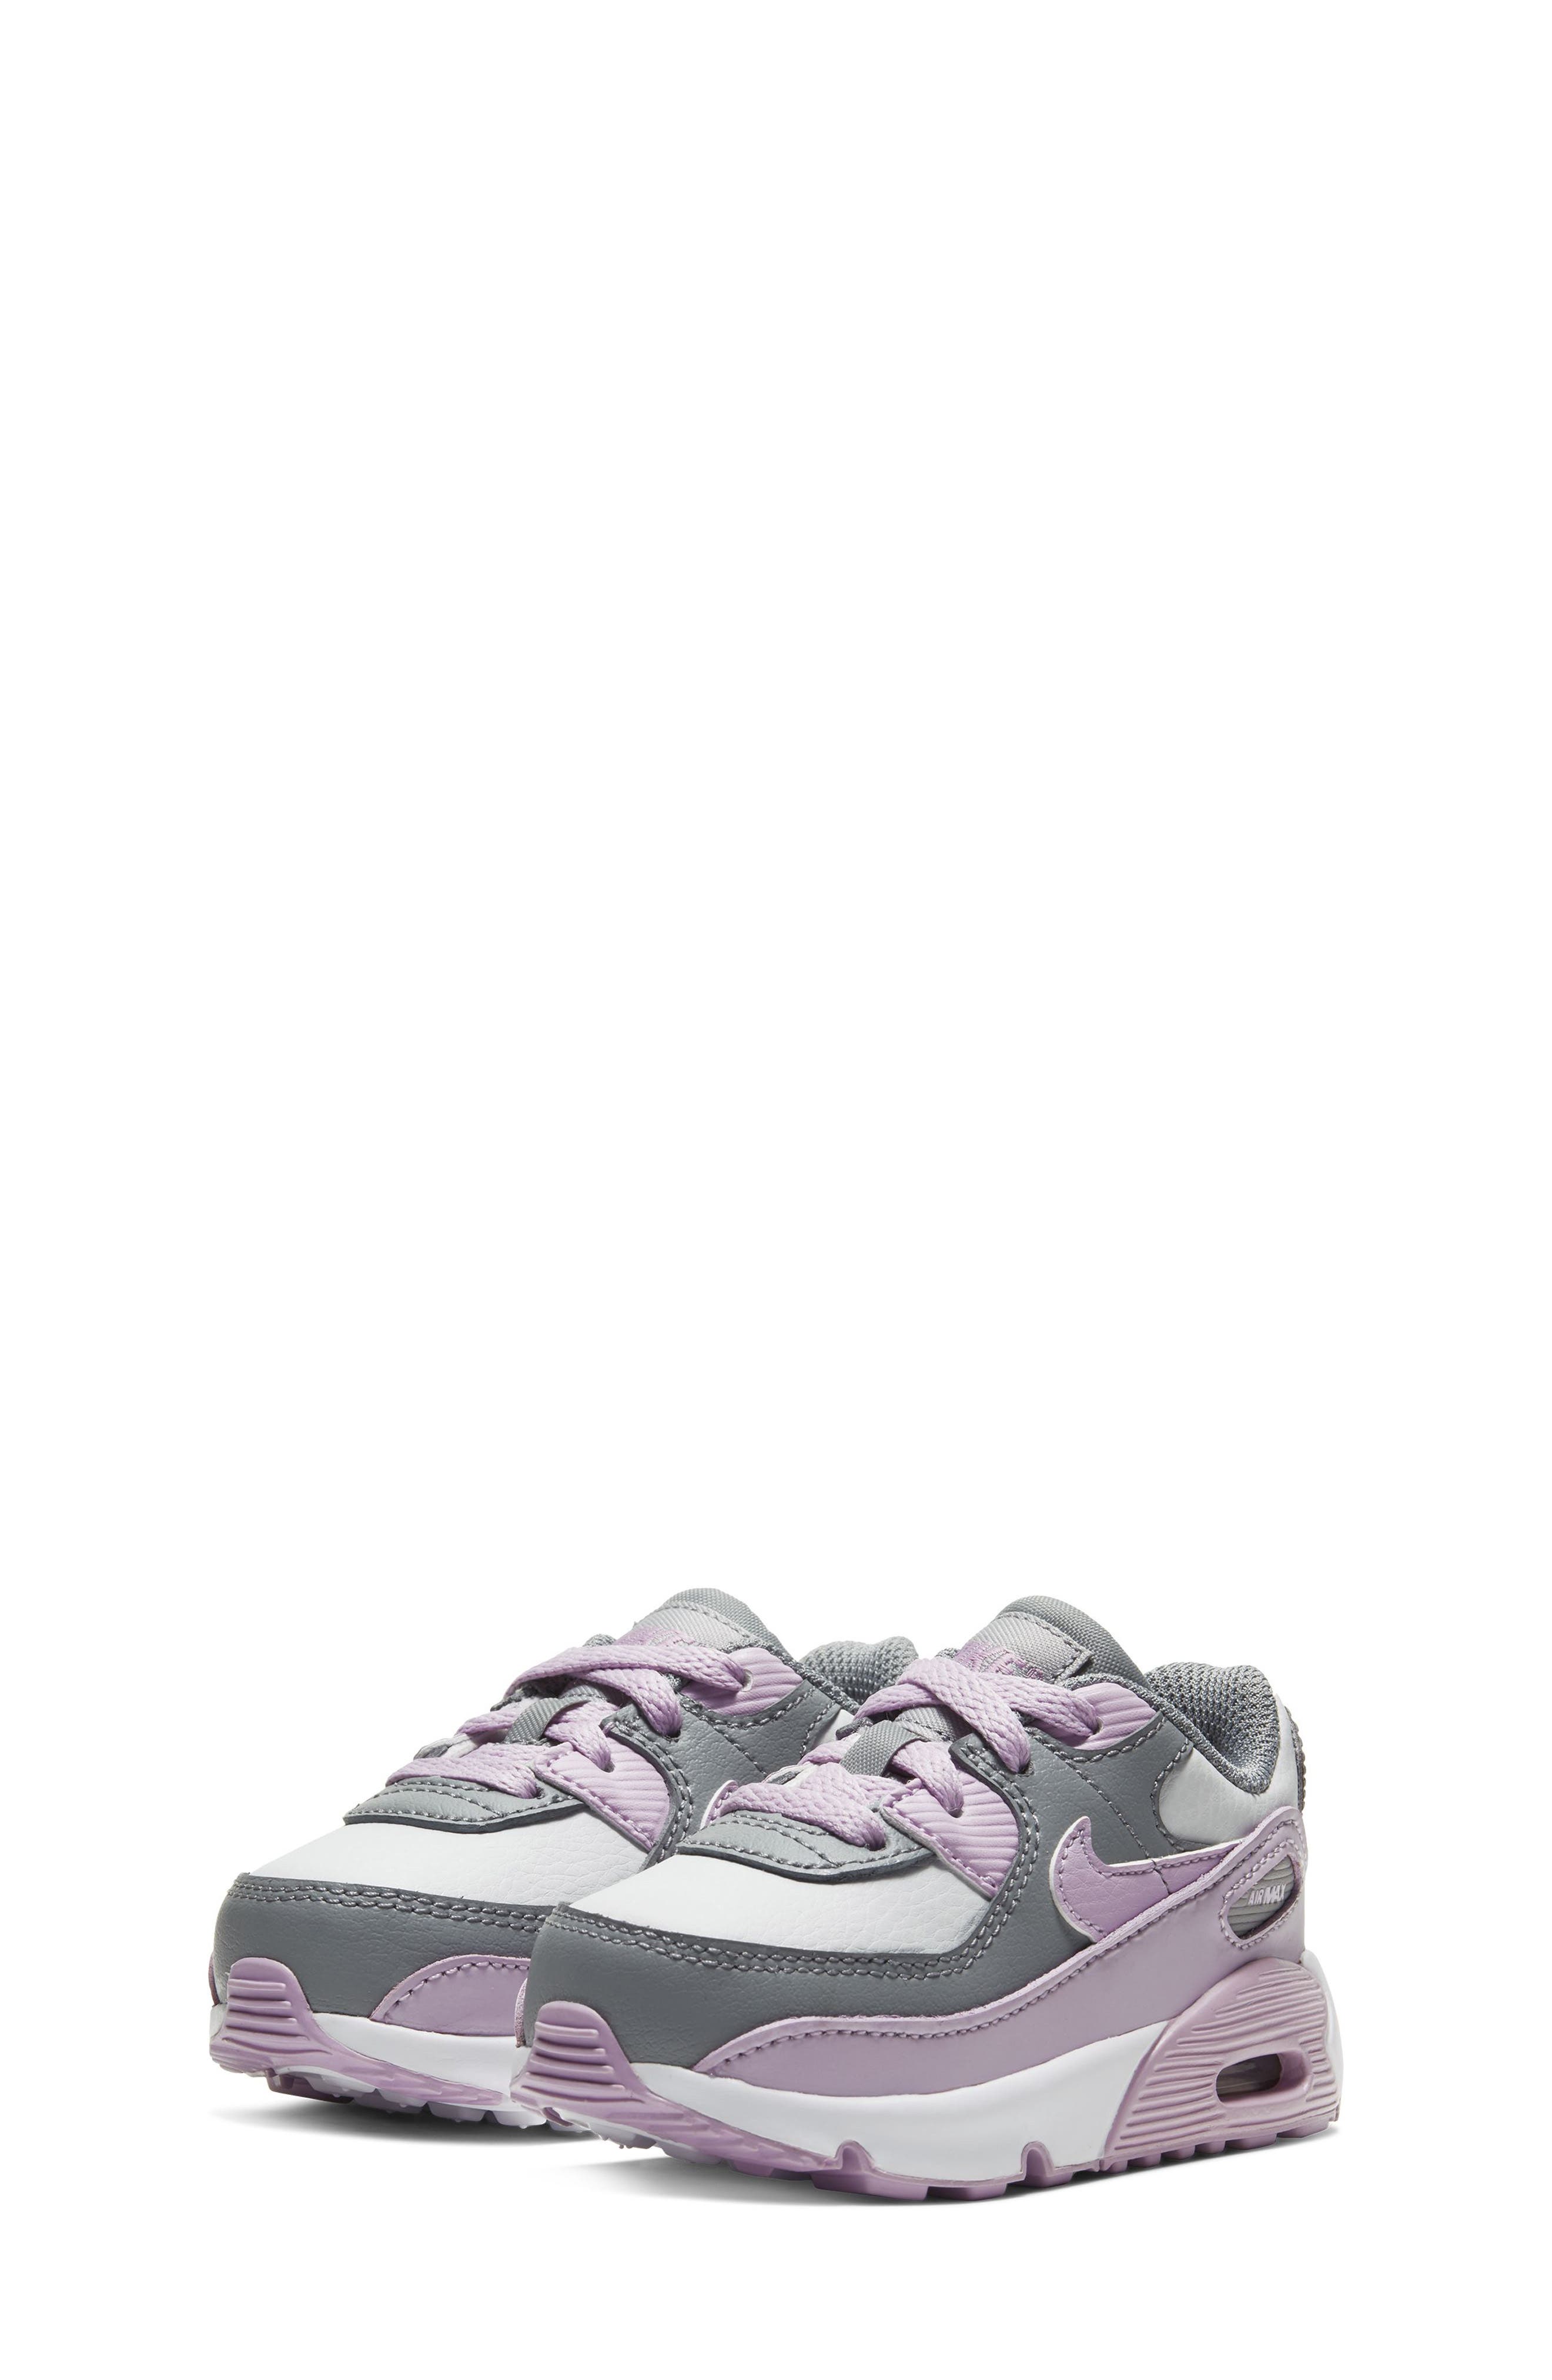 boys purple sneakers